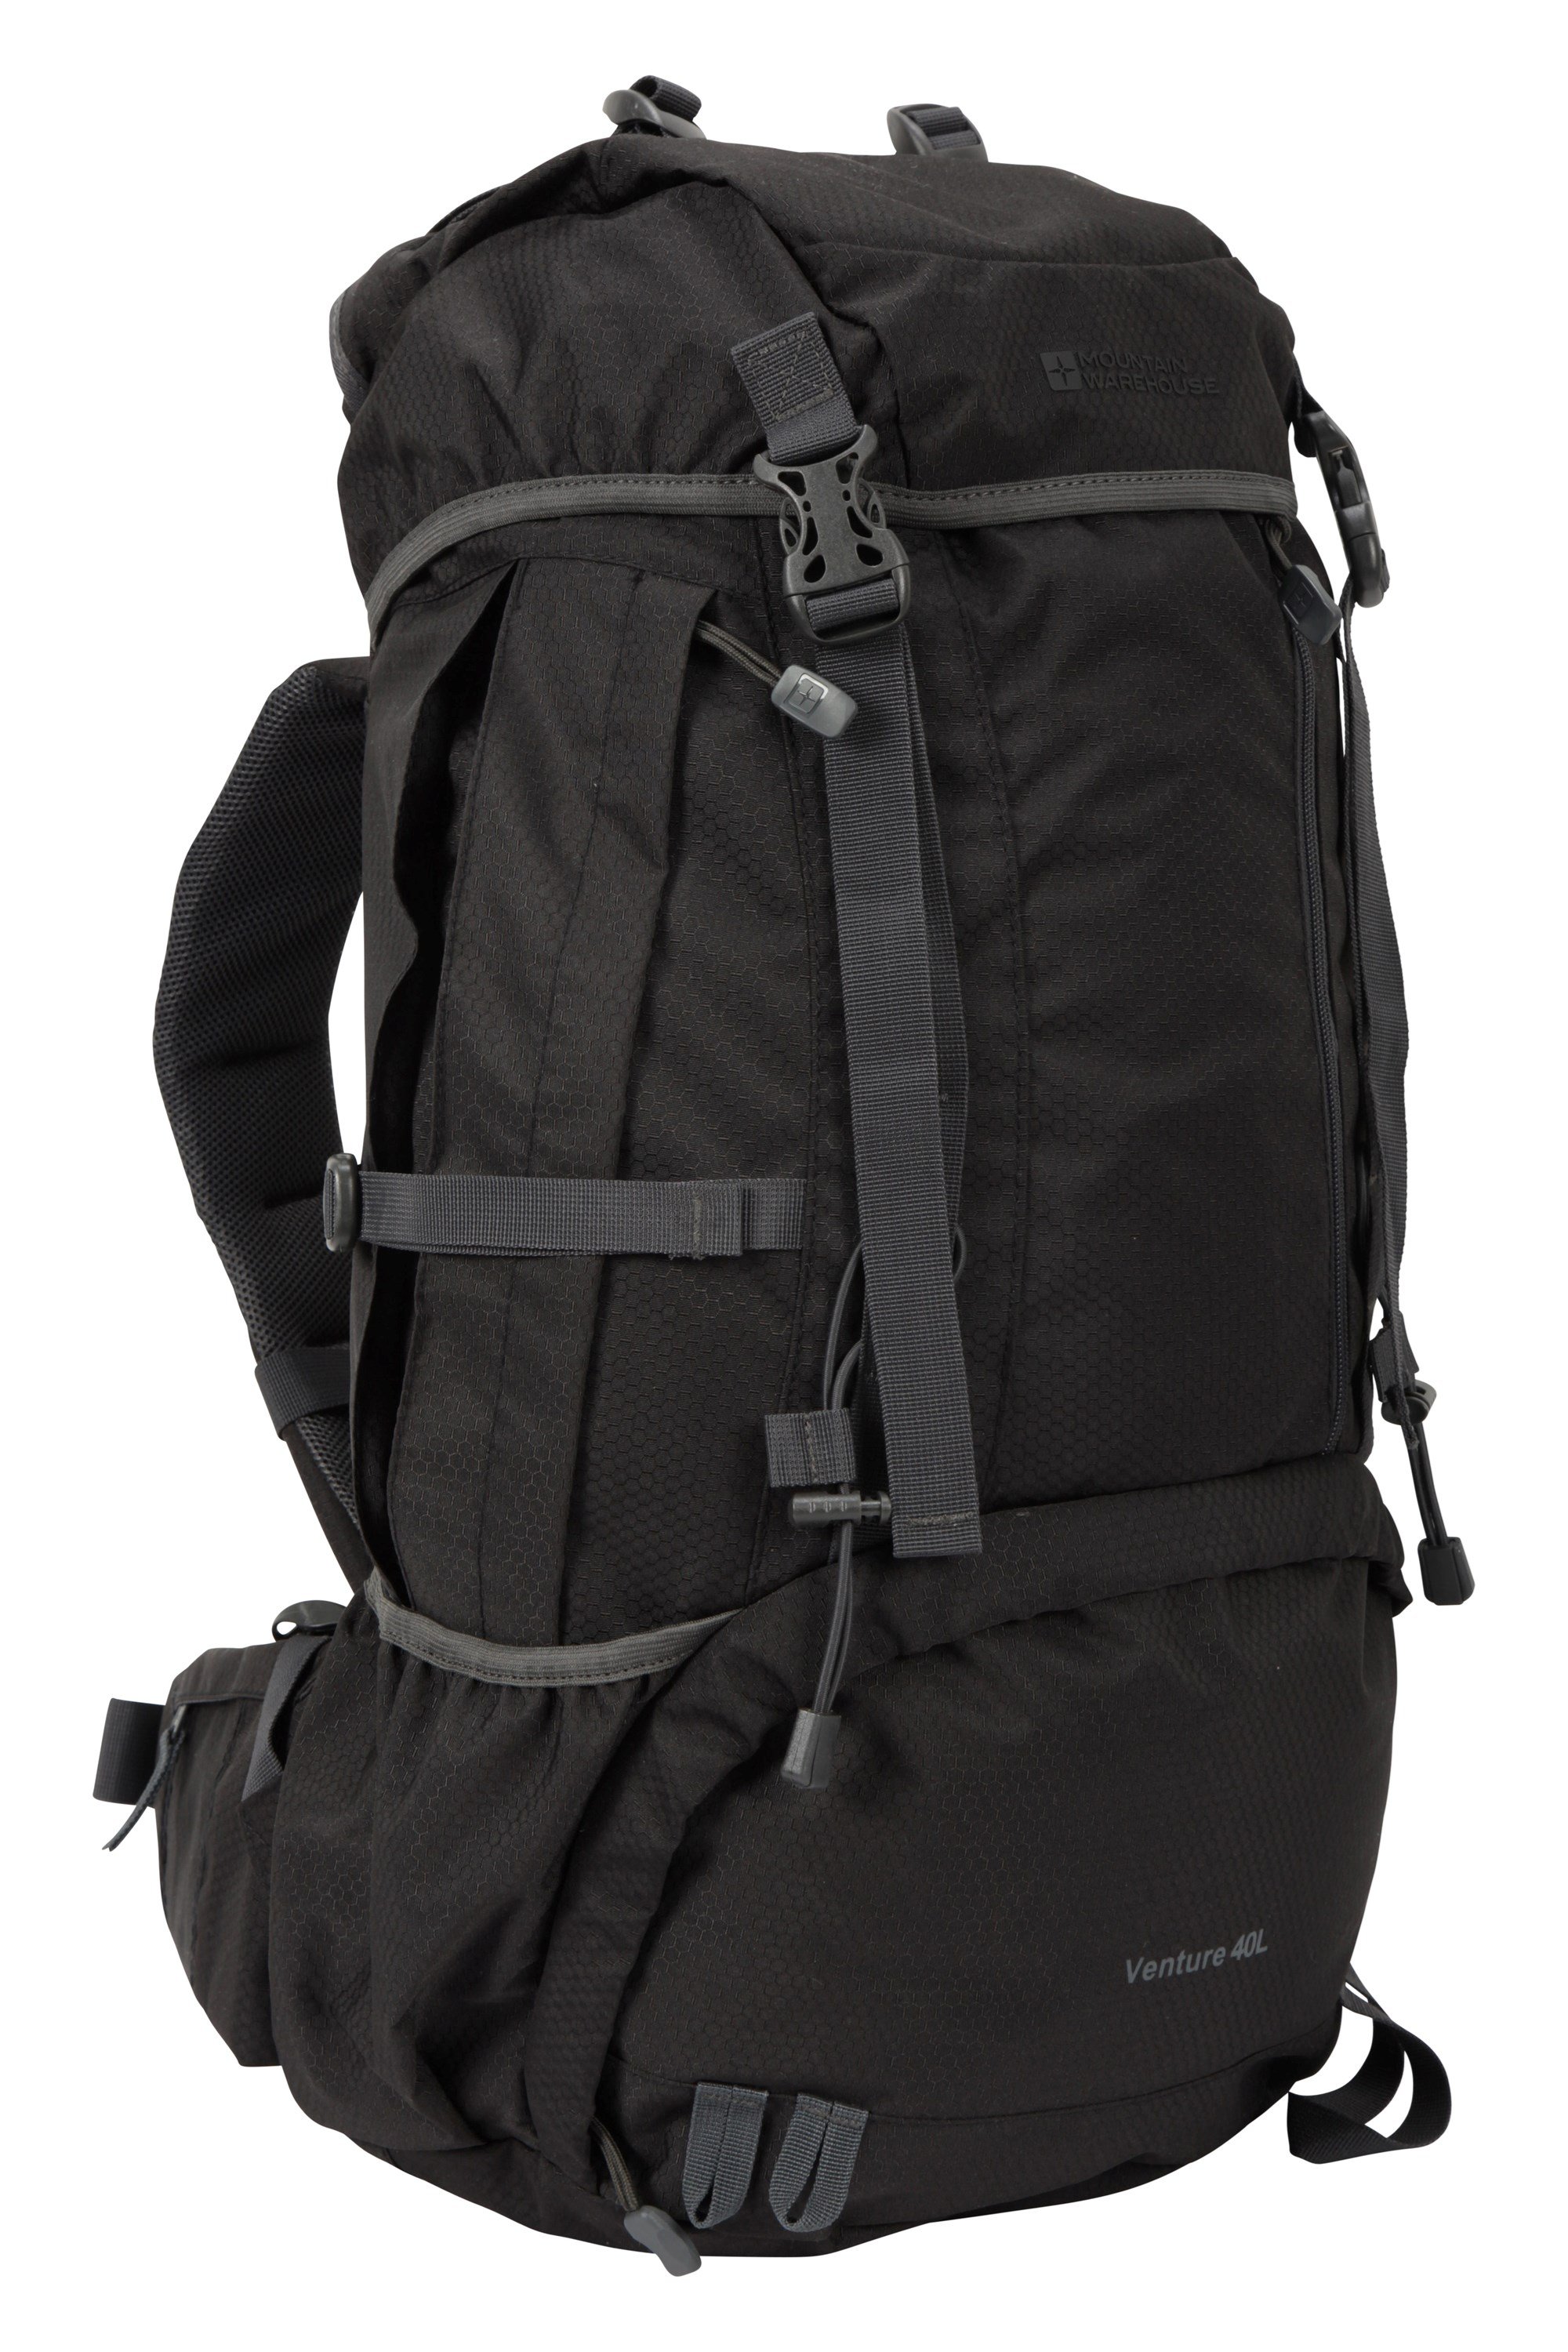 Venture 40L Backpack - Black